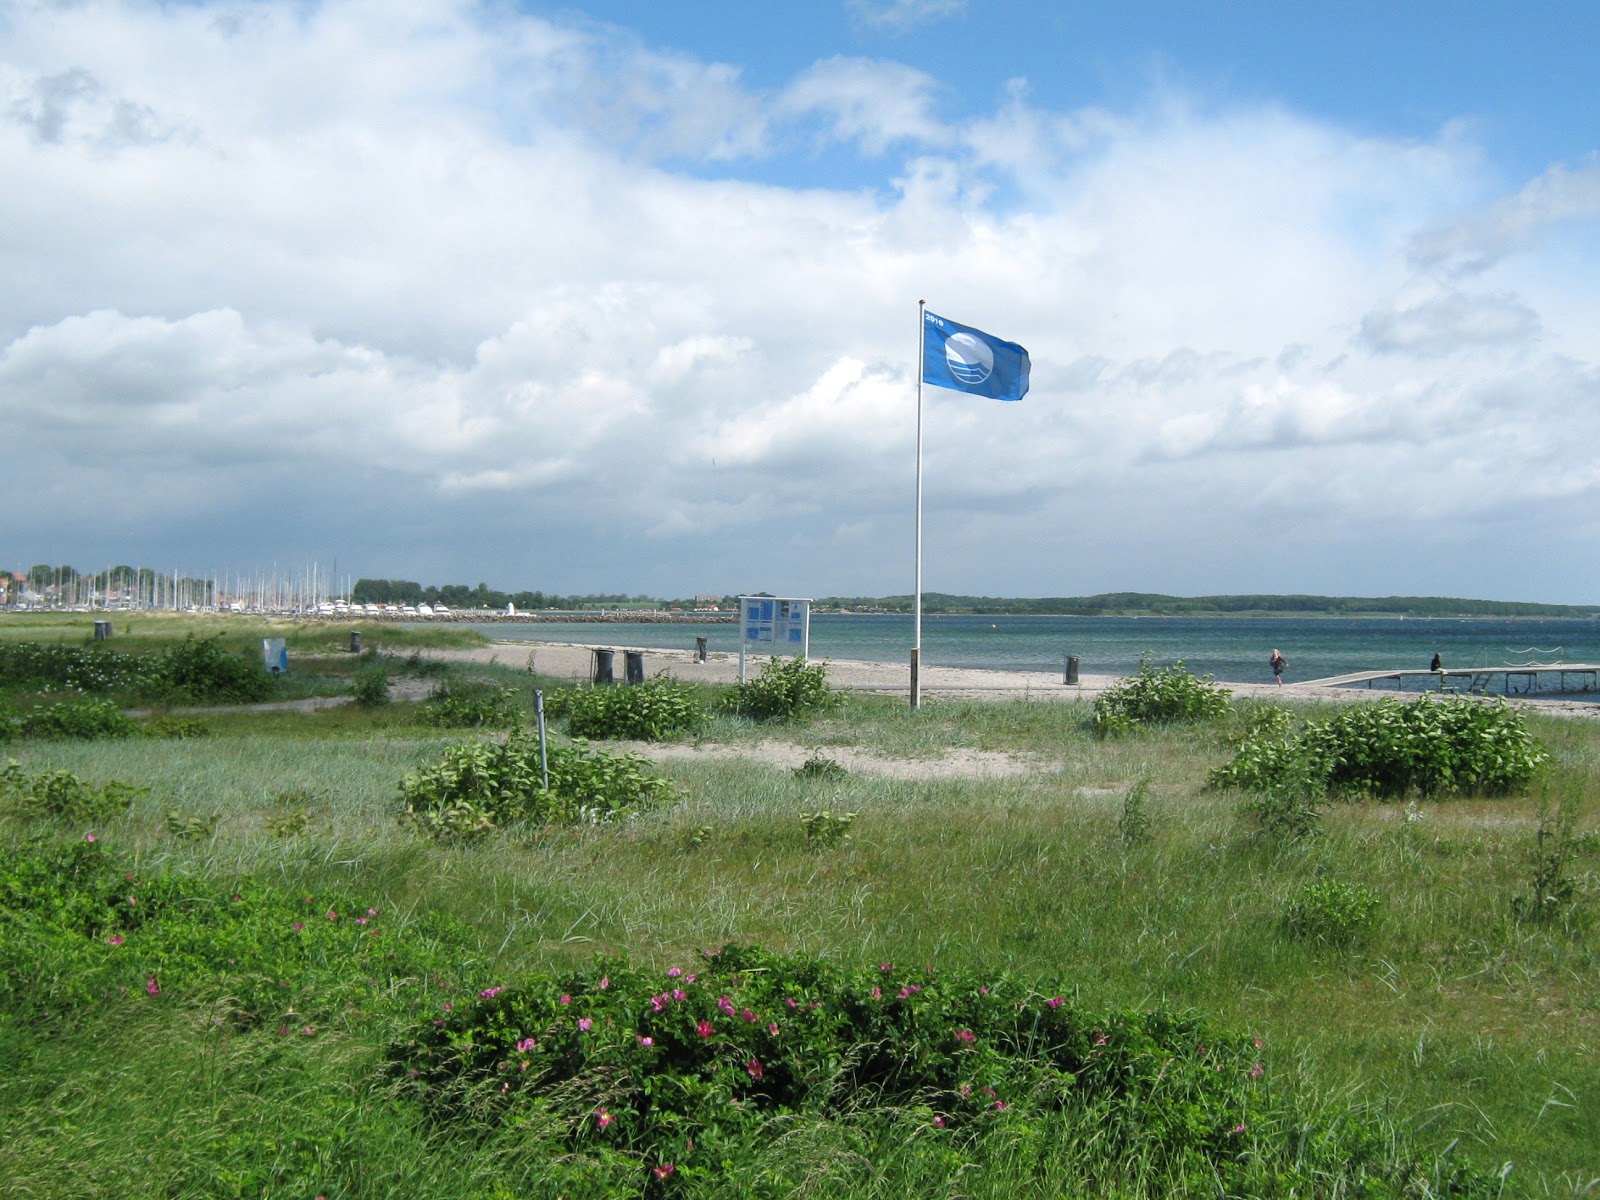 Zdjęcie Kerteminde Beach - popularne miejsce wśród znawców relaksu